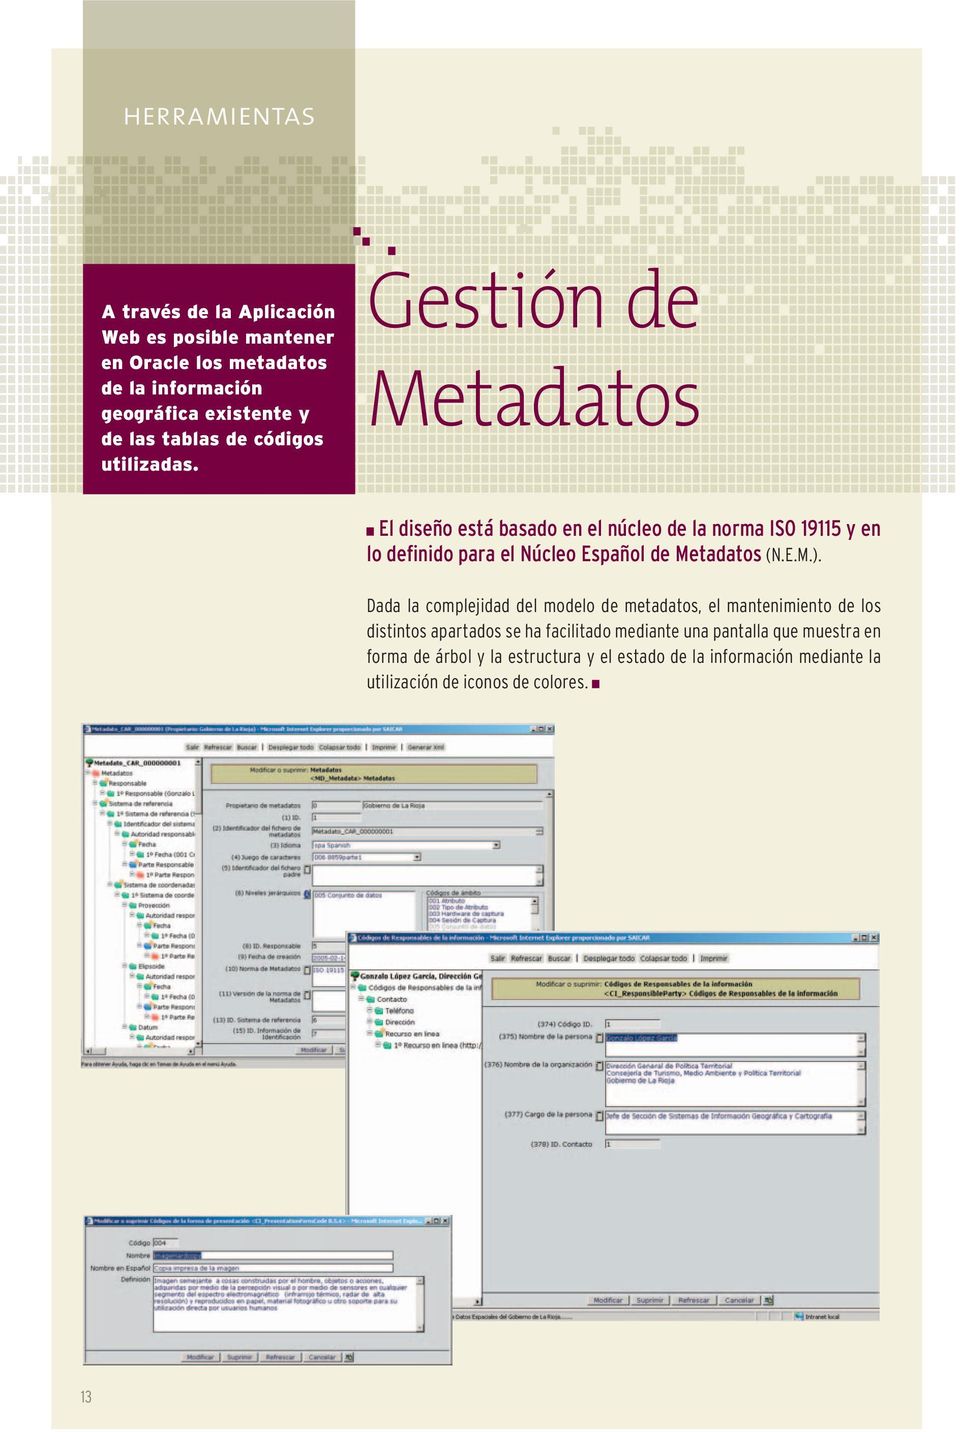 Gestión de Metadatos El diseño está basado en el núcleo de la norma ISO 19115 y en lo definido para el Núcleo Español de Metadatos (N.E.M.).